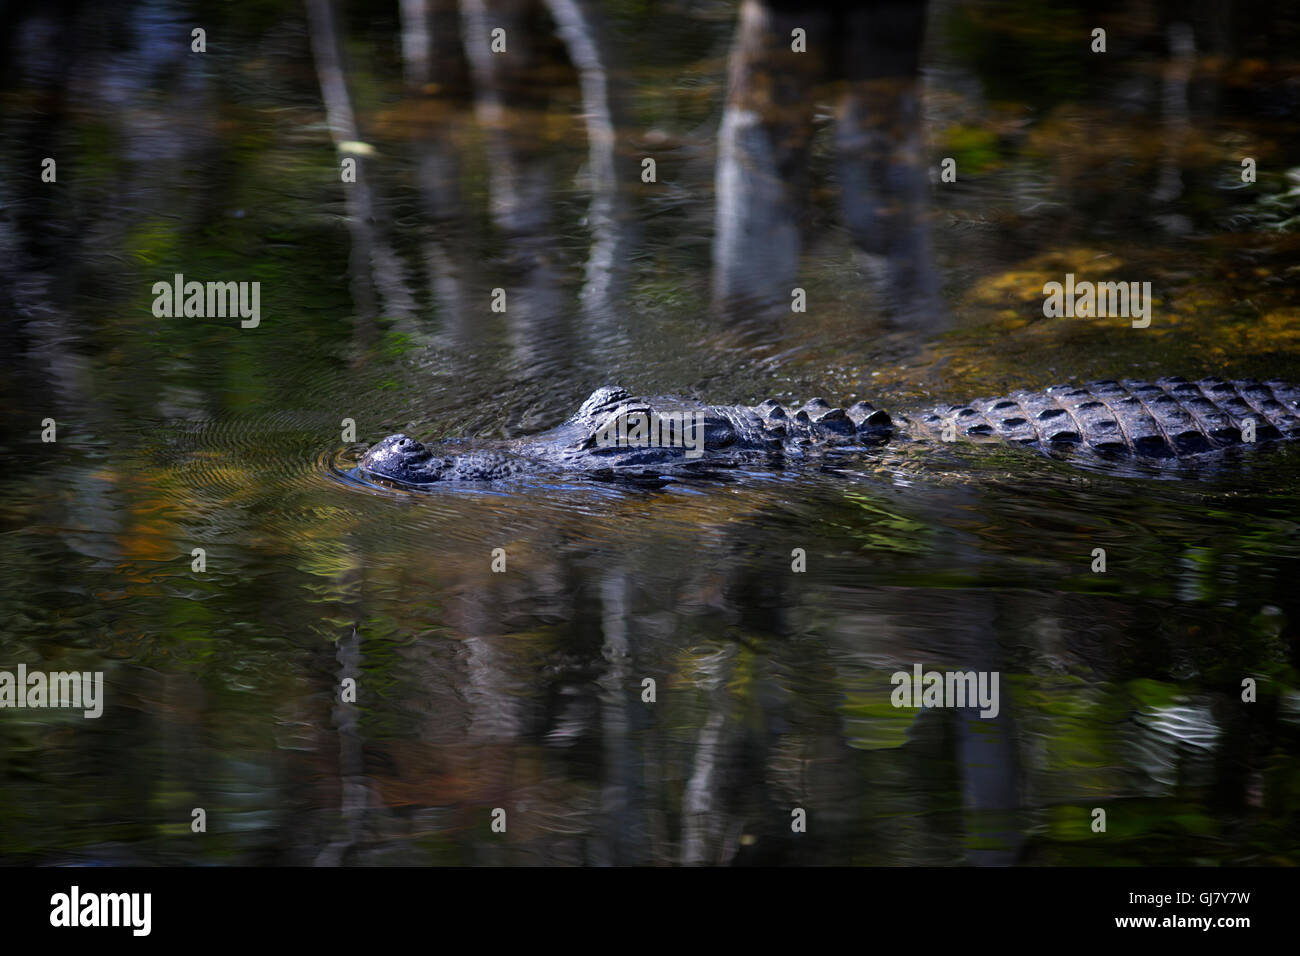 Ein amerikanischer Alligator Kreuzfahrten durch Big Cypress Swamp mitten in erdigen Farben und Reflexionen in einer ruhigen natürlichen Umgebung. Stockfoto